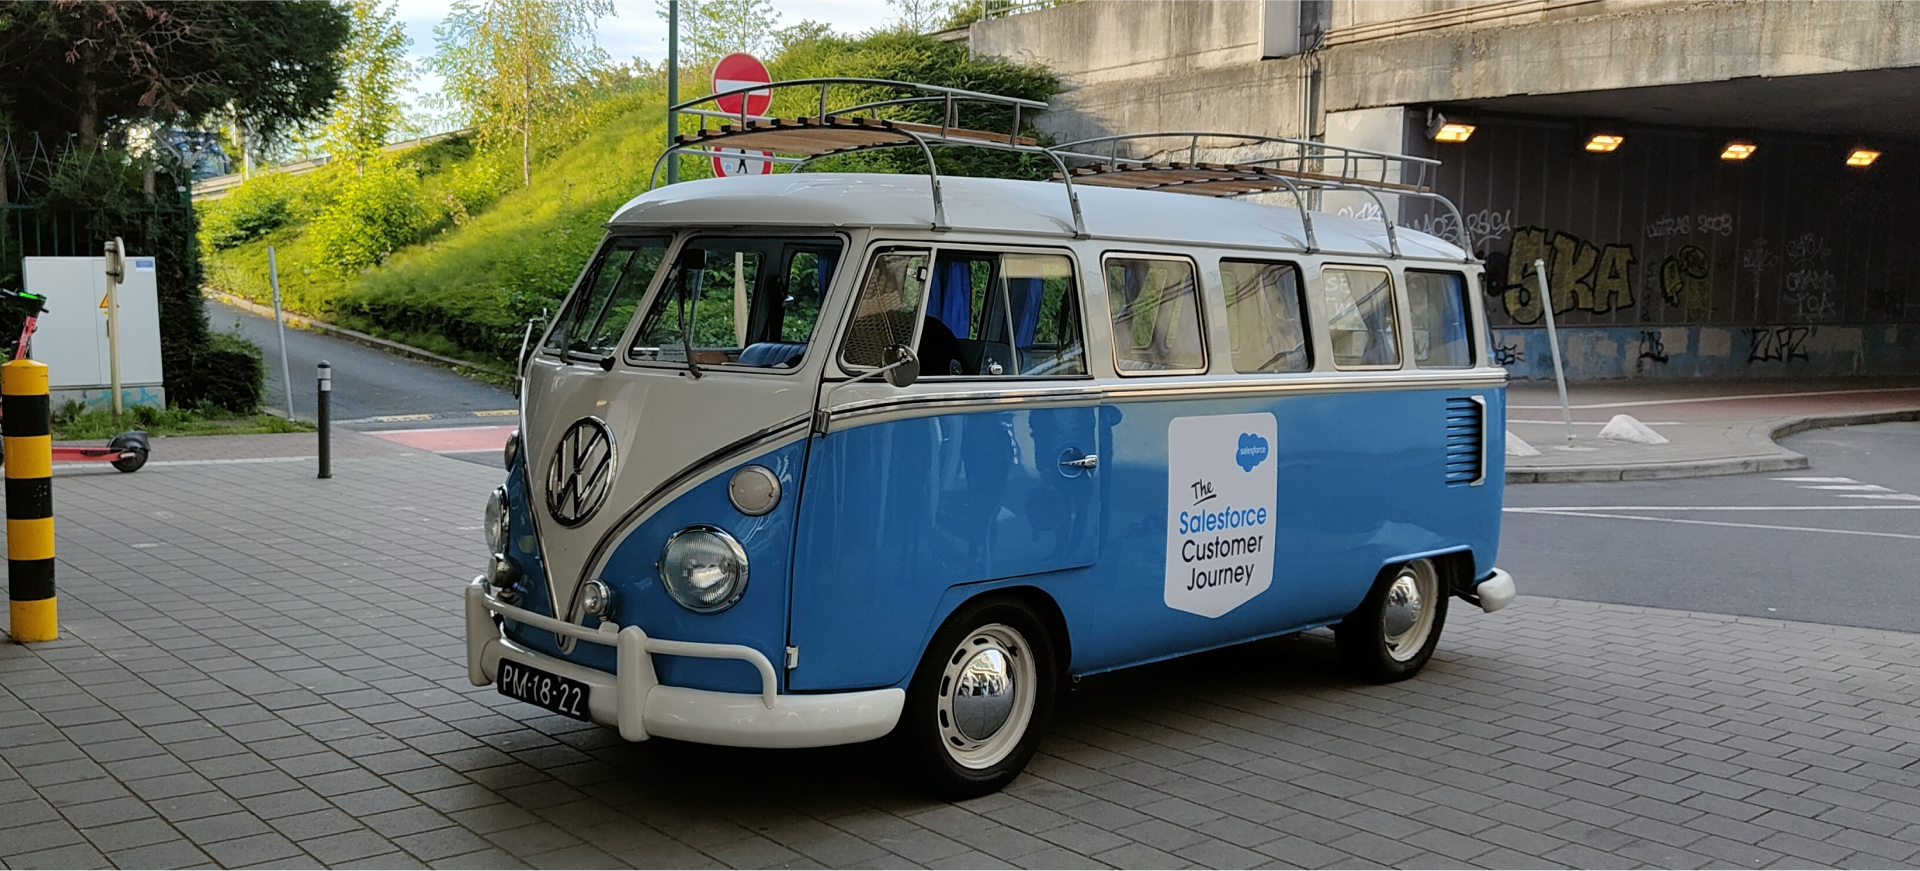 The Salesforce Customer Journey Van